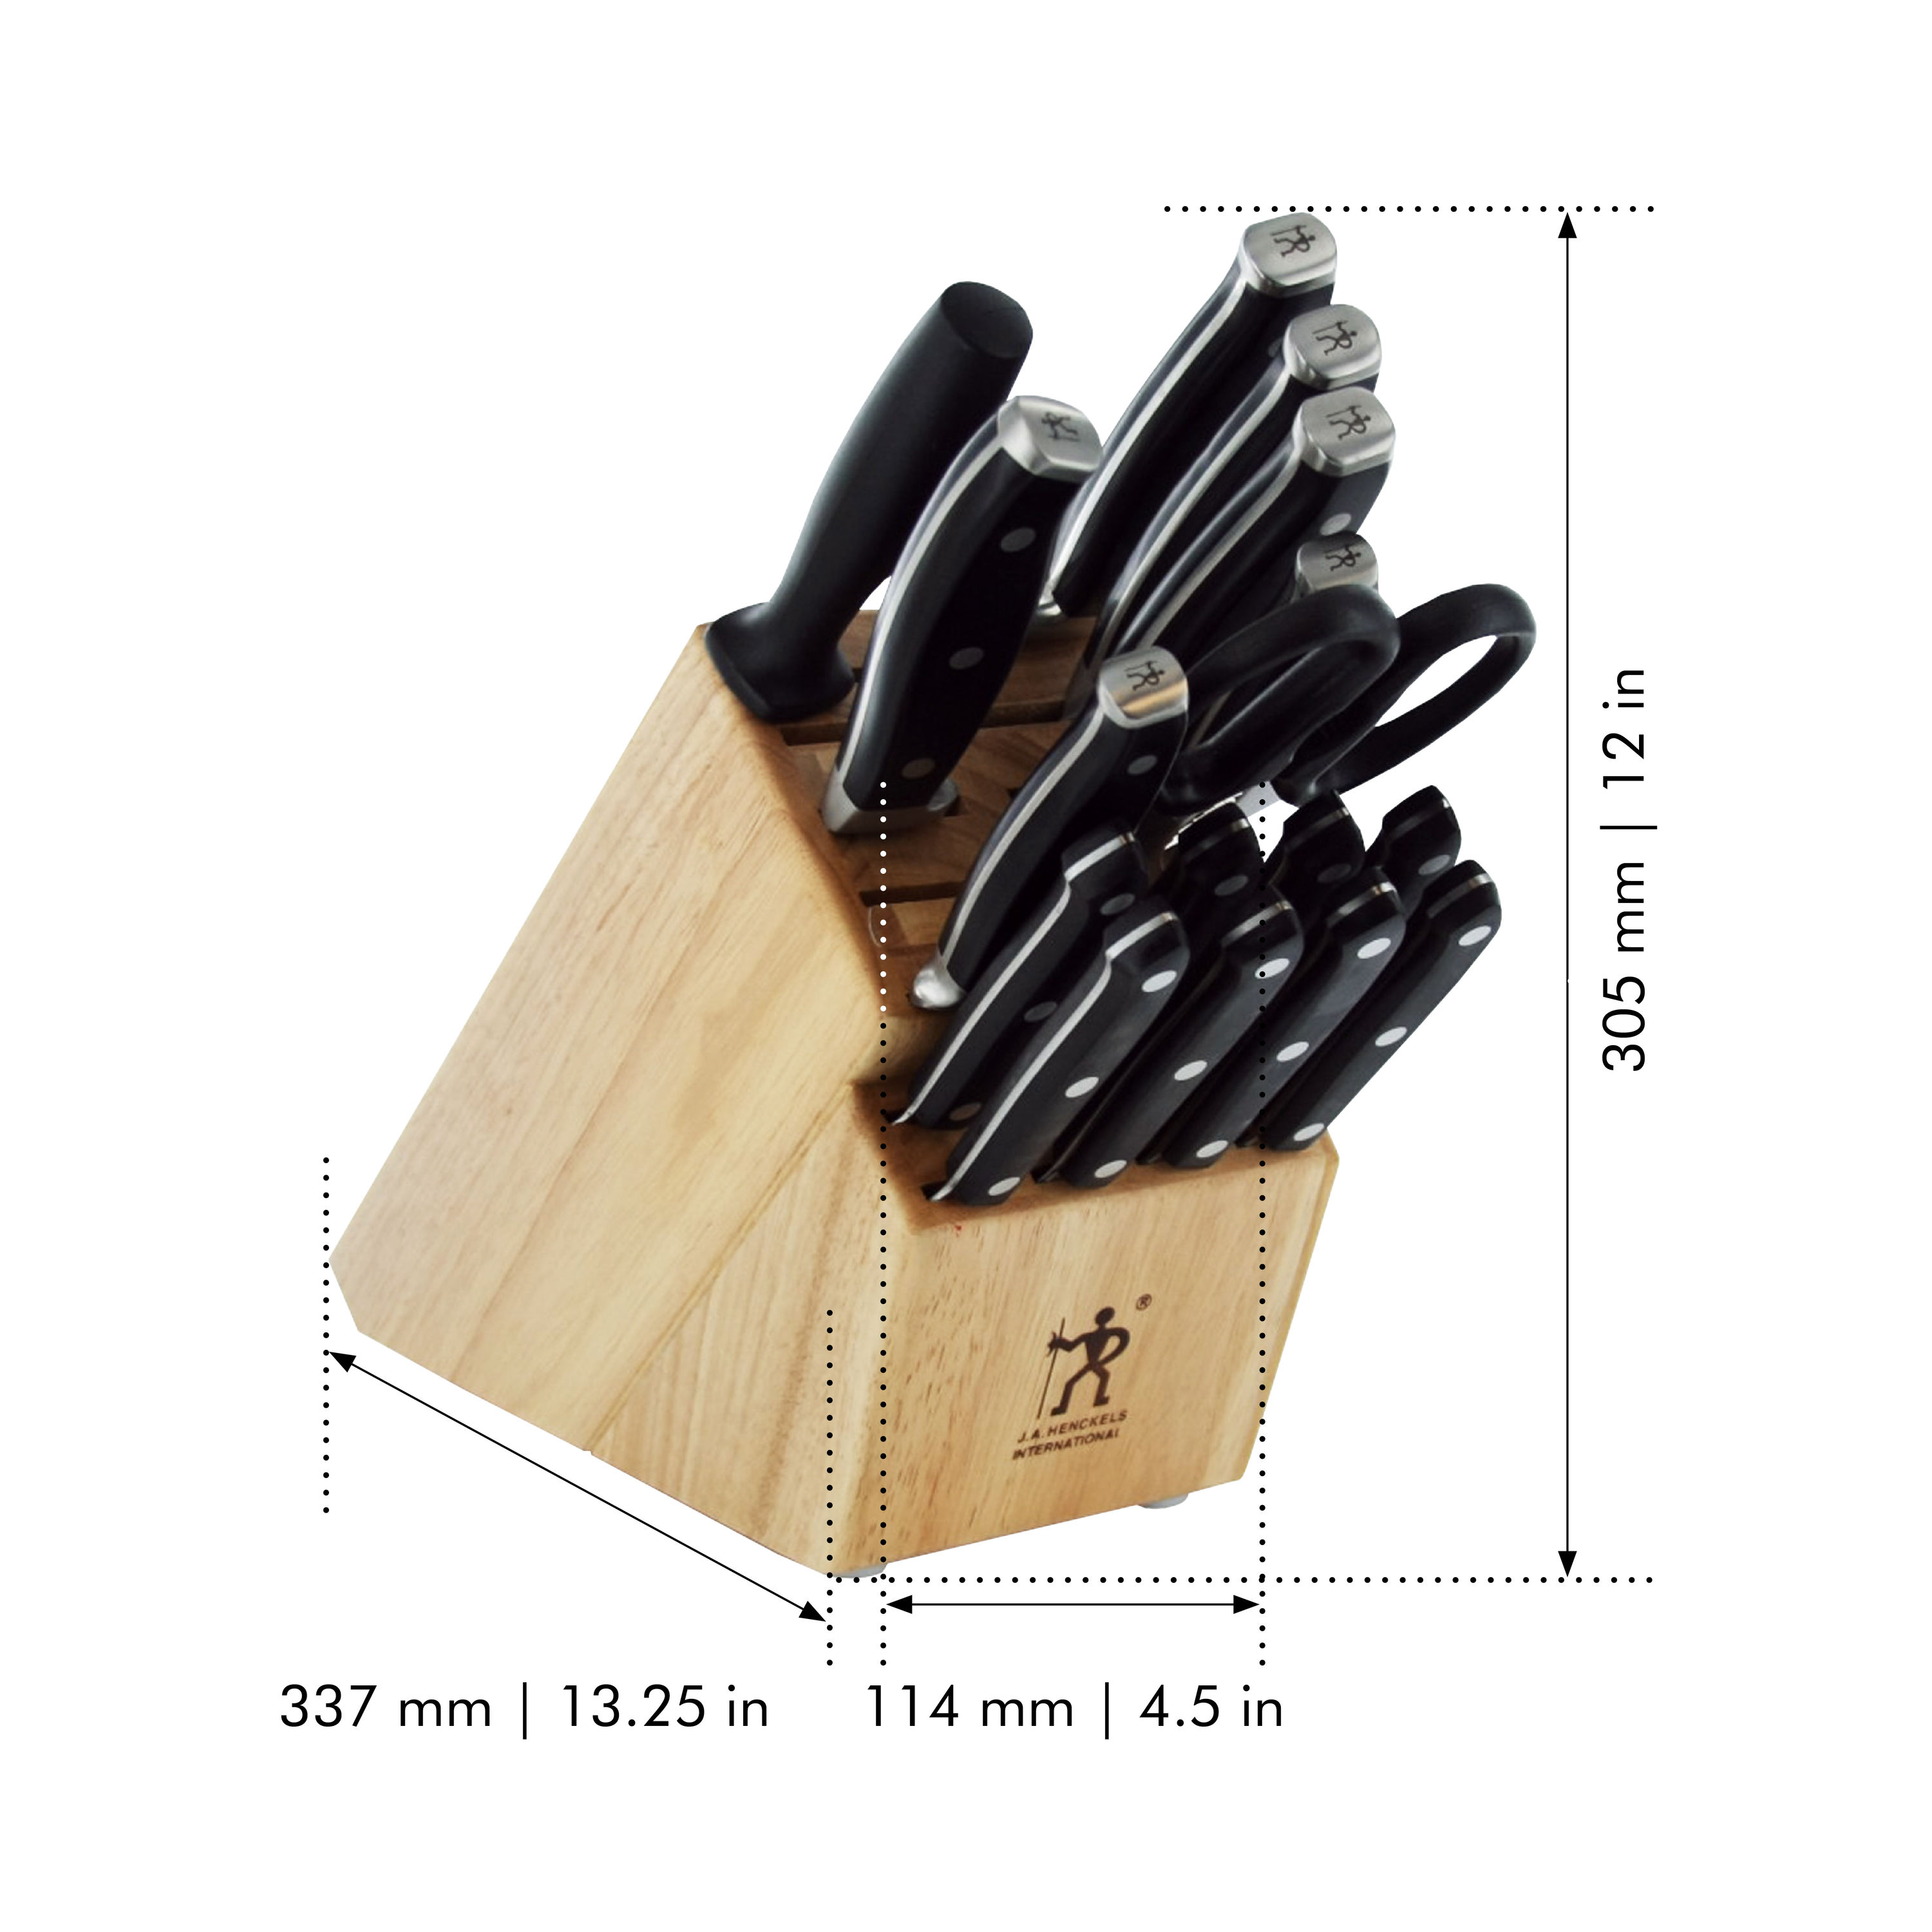 Kitchen Knife Set with Wooden Block, 17-Piece Modern Design High